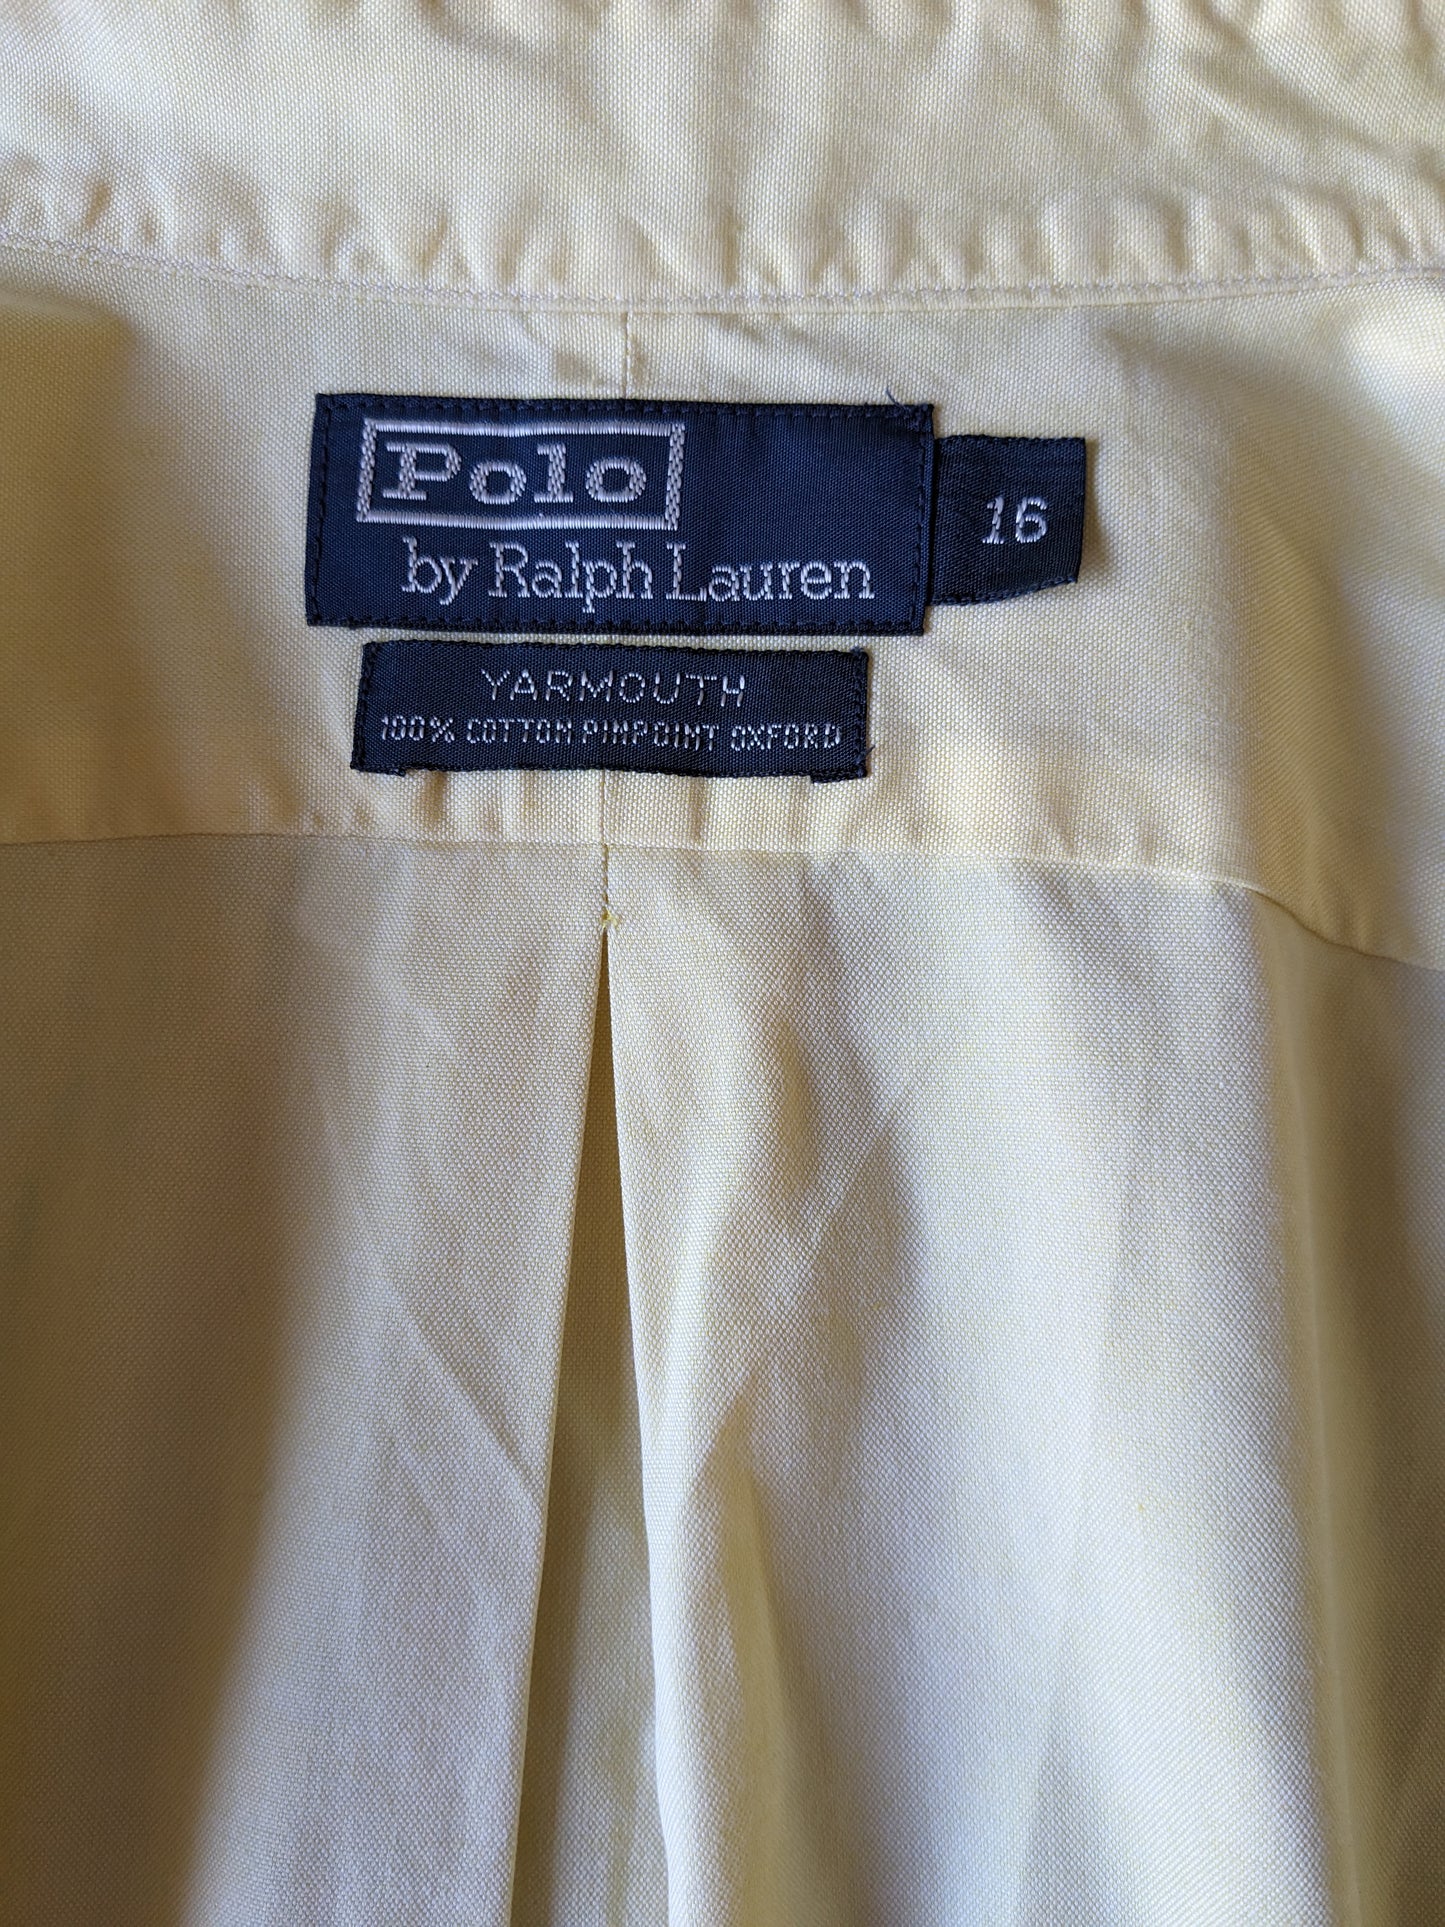 Polo de Ralph Lauren Shirt. Amarillo. Tipo de Yarmouth. Tamaño 2xl / xxl.